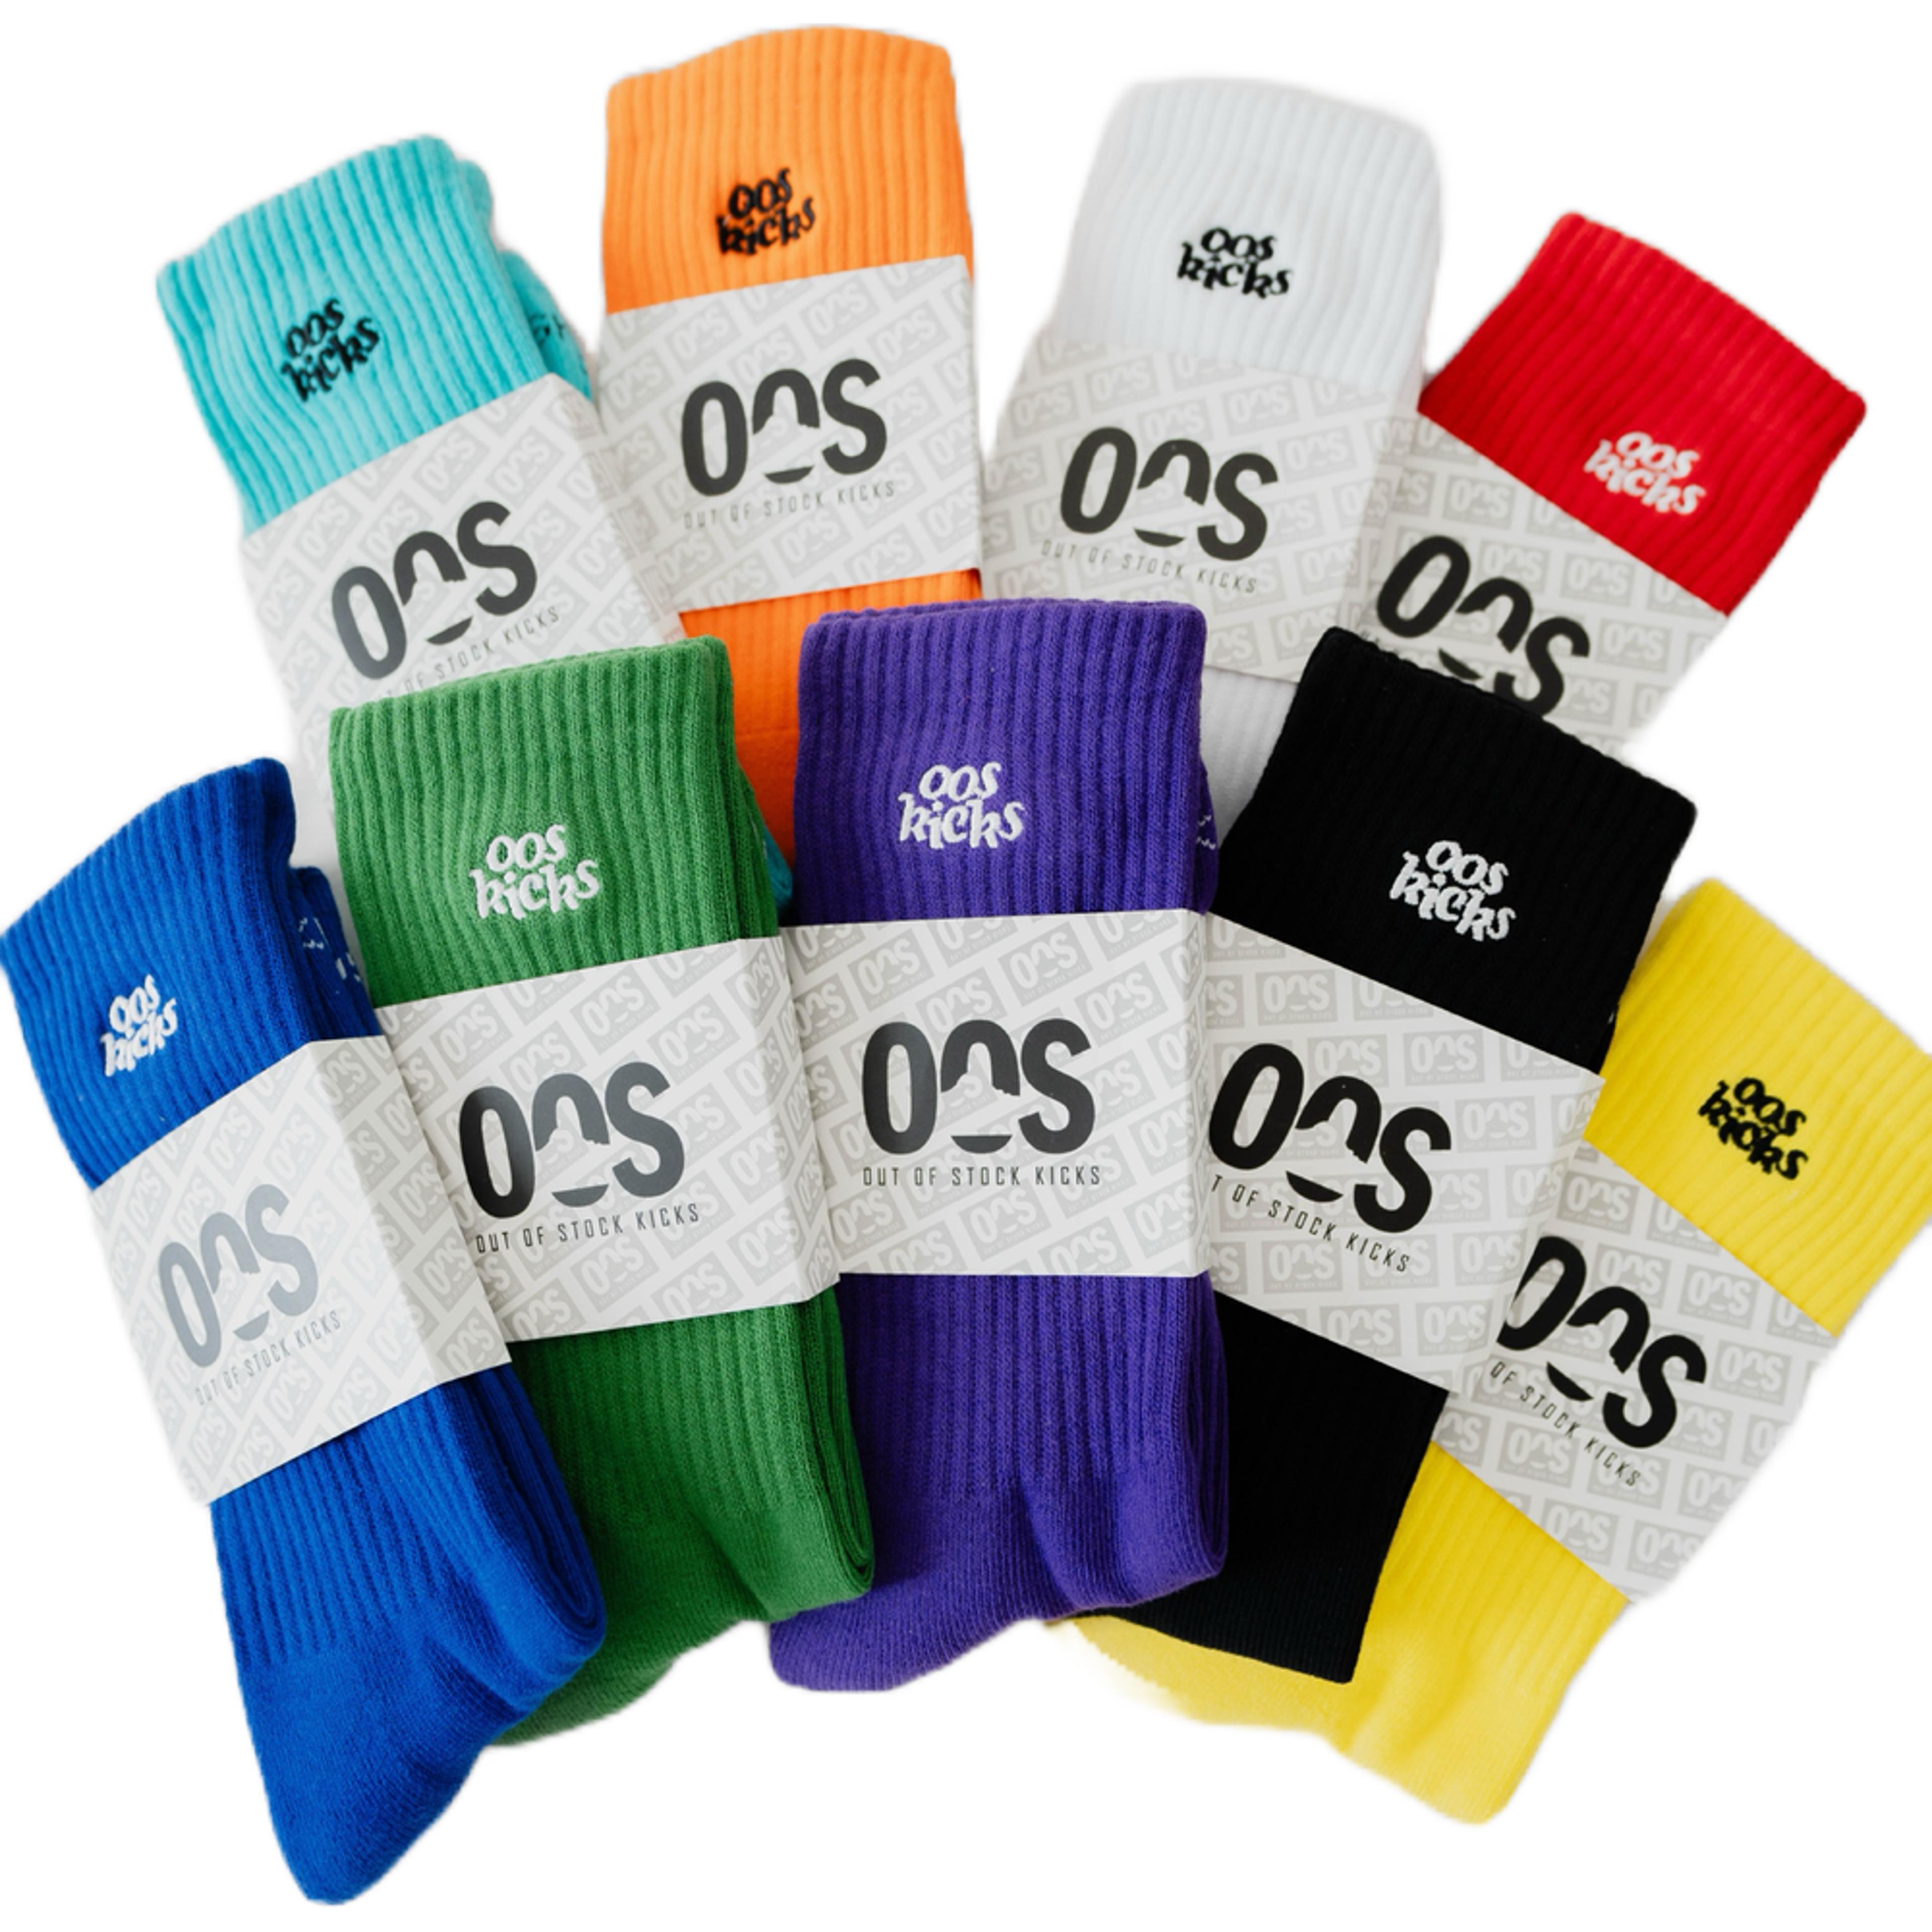 OOS Staple Socks V3